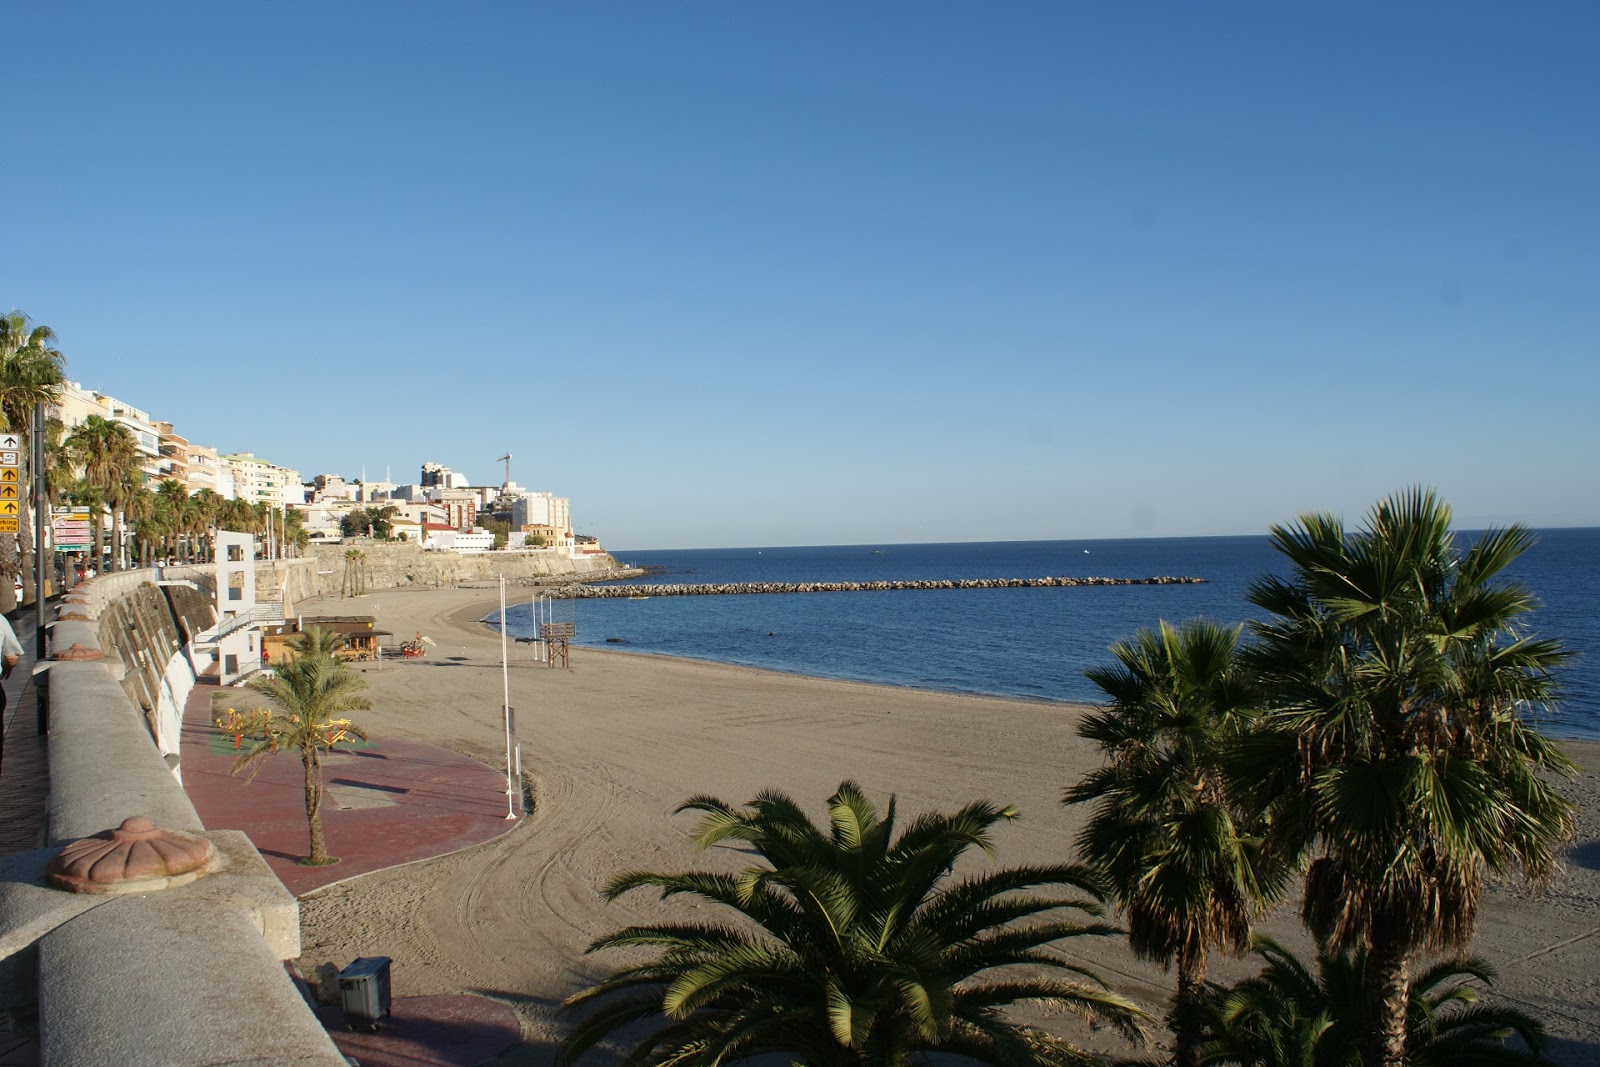 Playa de la Ribera'in fotoğrafı küçük koy ile birlikte